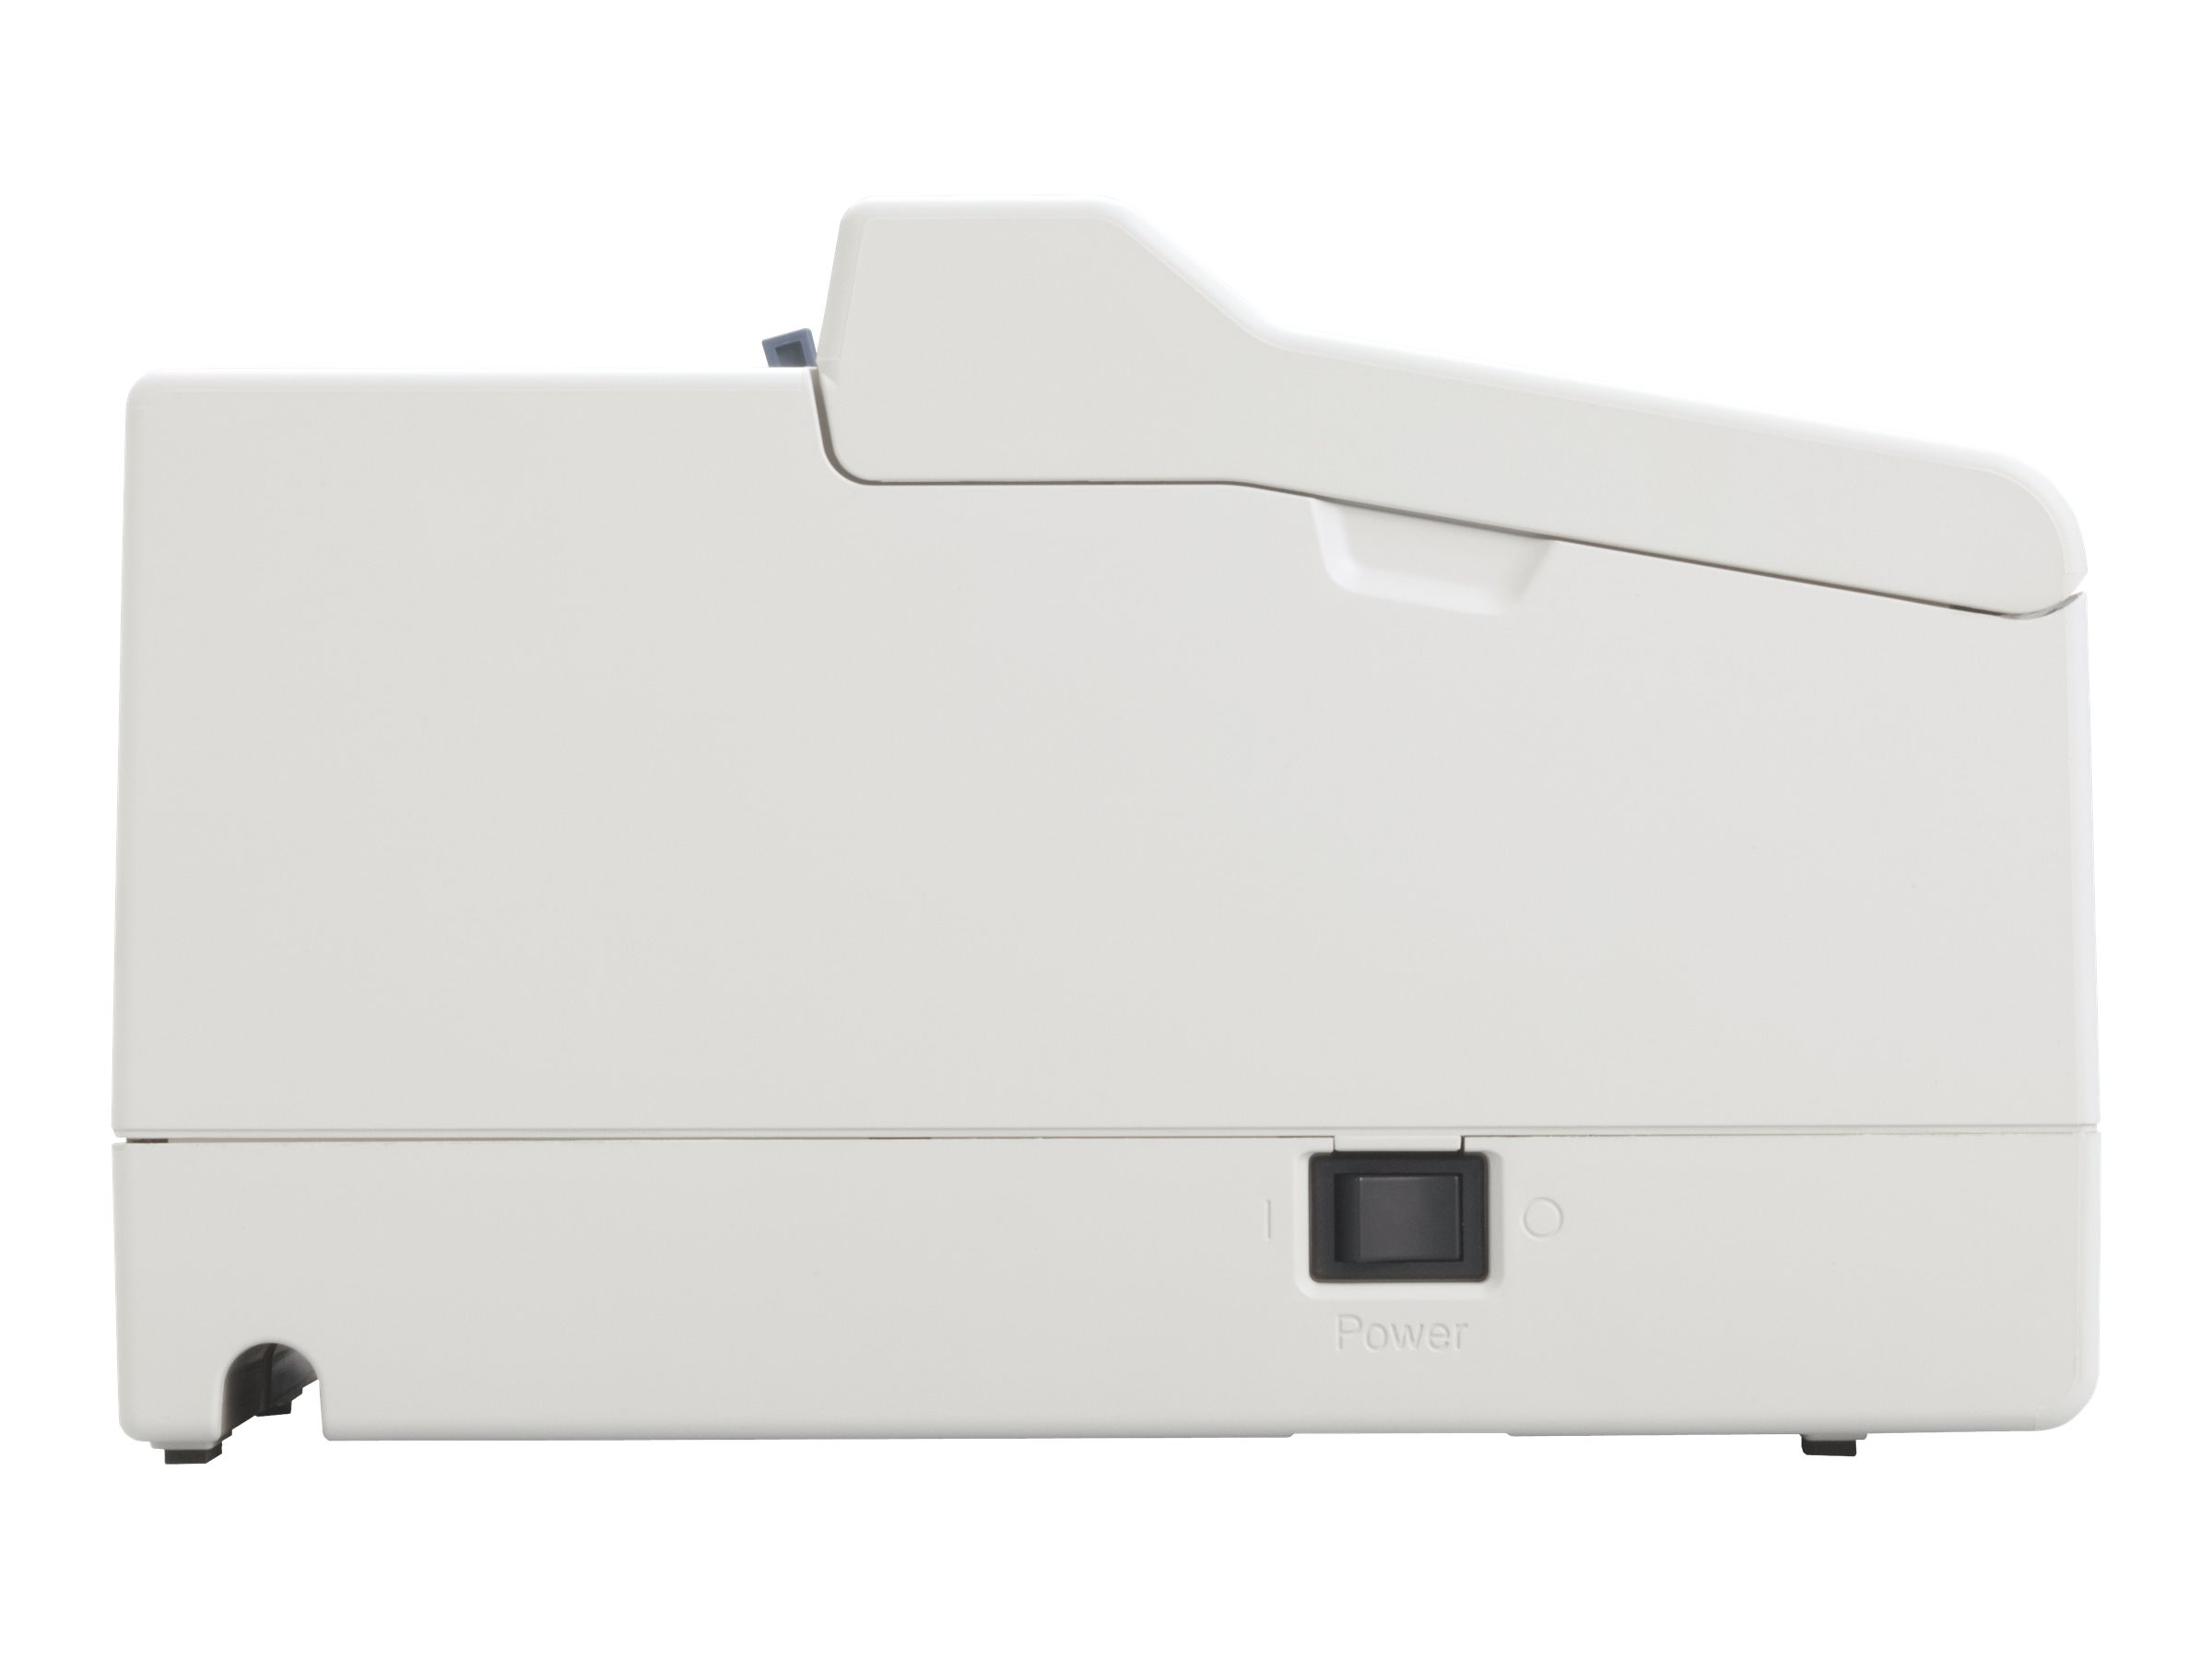 Epson LQ 50 - Imprimante - Noir et blanc - matricielle - 152,4 mm (largeur) - 20 cpi - 24 pin - jusqu'à 360 car/sec - parallèle, USB - C11CB12031 - Imprimantes matricielles